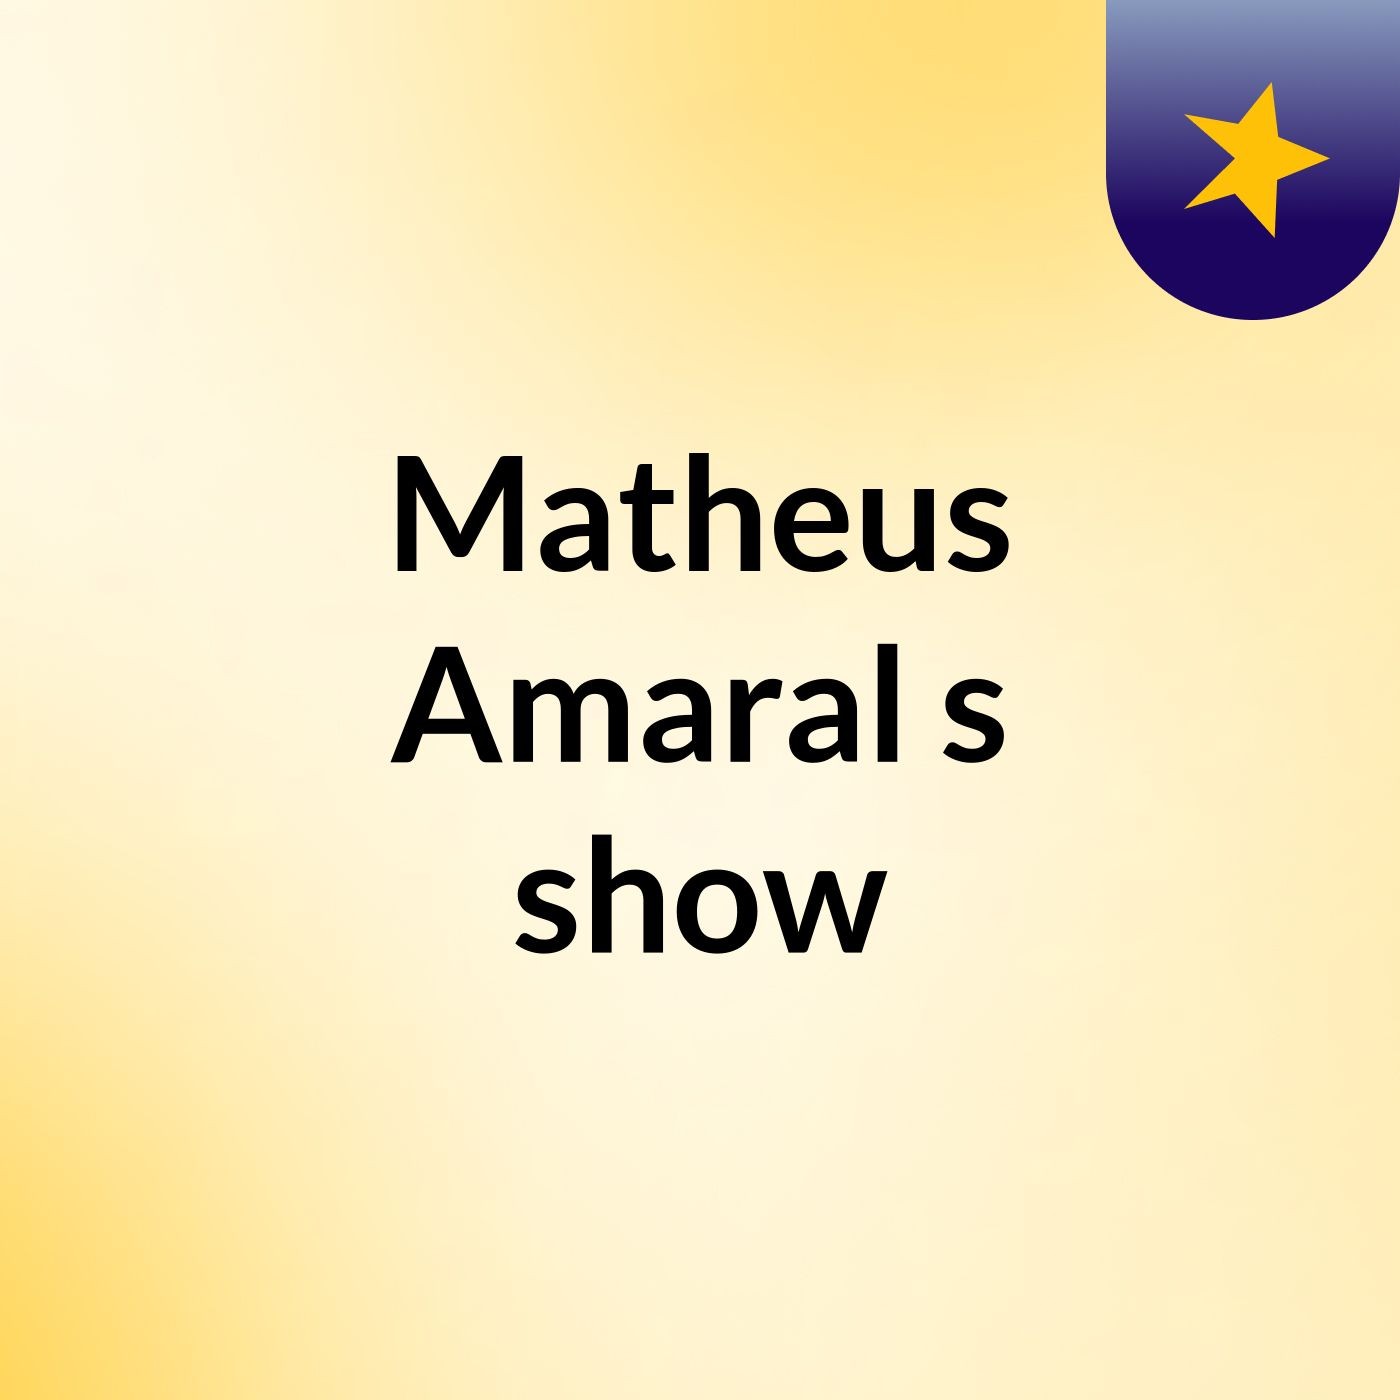 Matheus Amaral's show